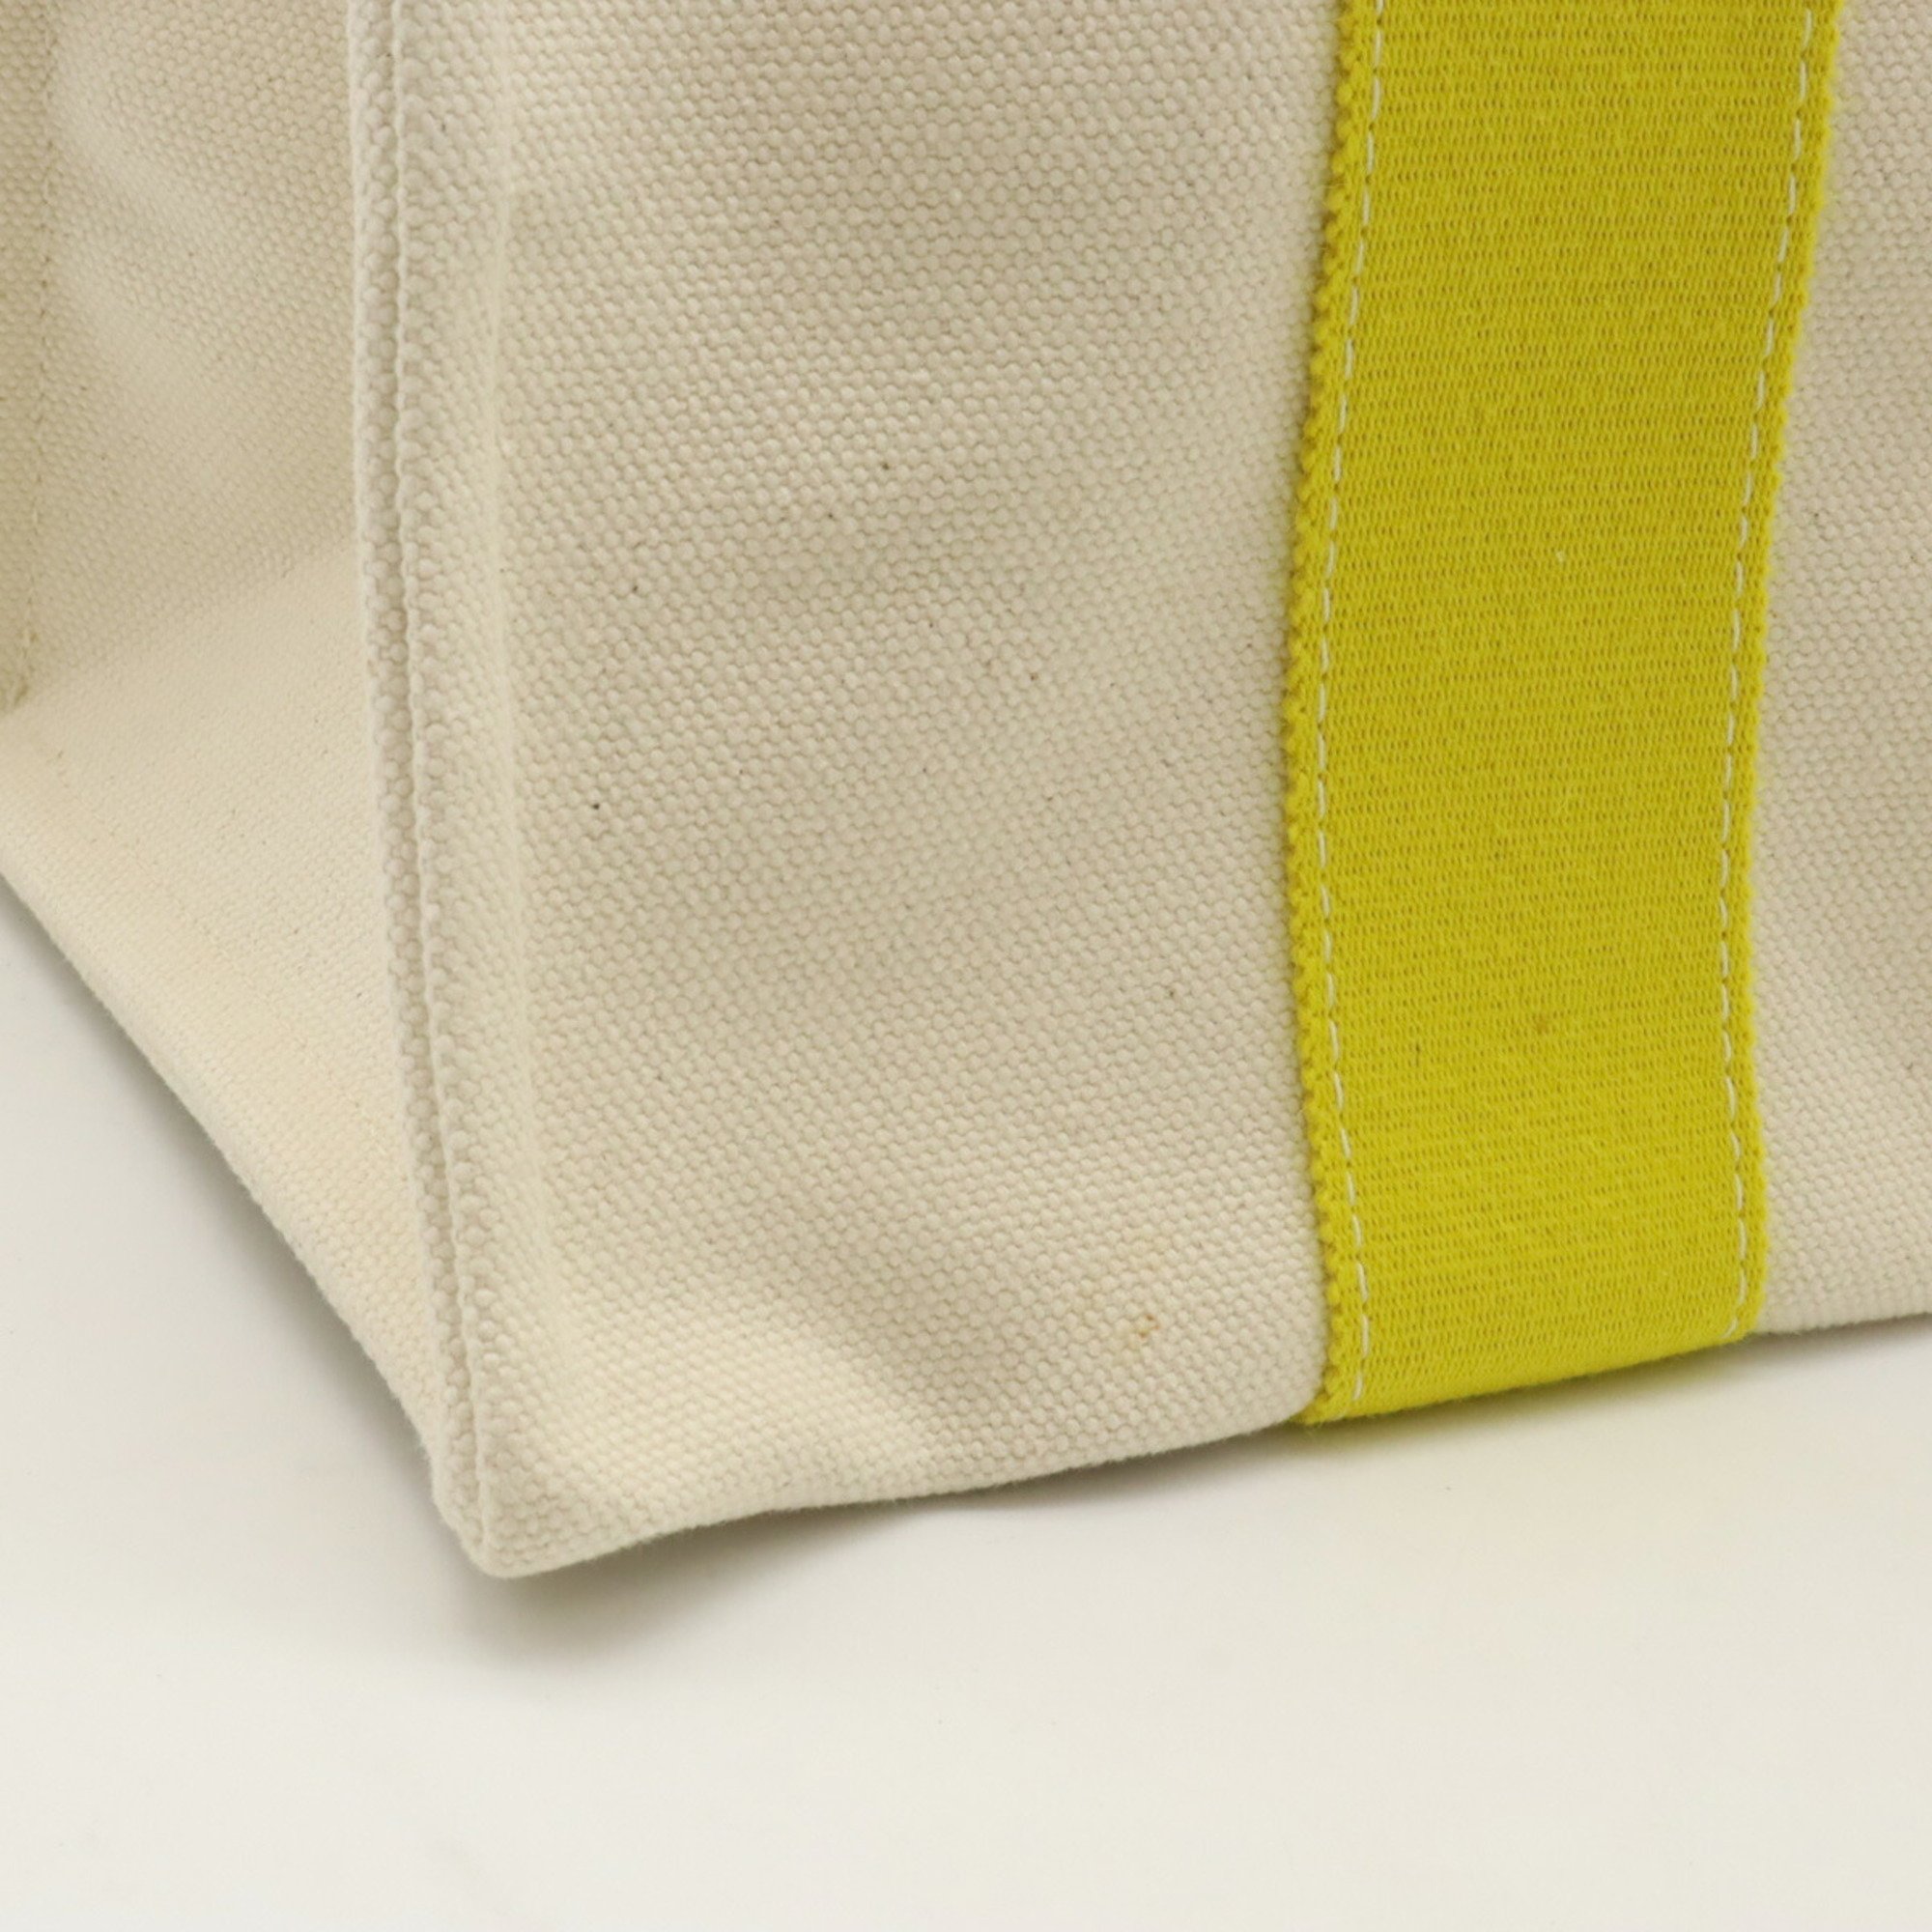 HERMES Bora PM Tote Bag Handbag Canvas Natural Yellow